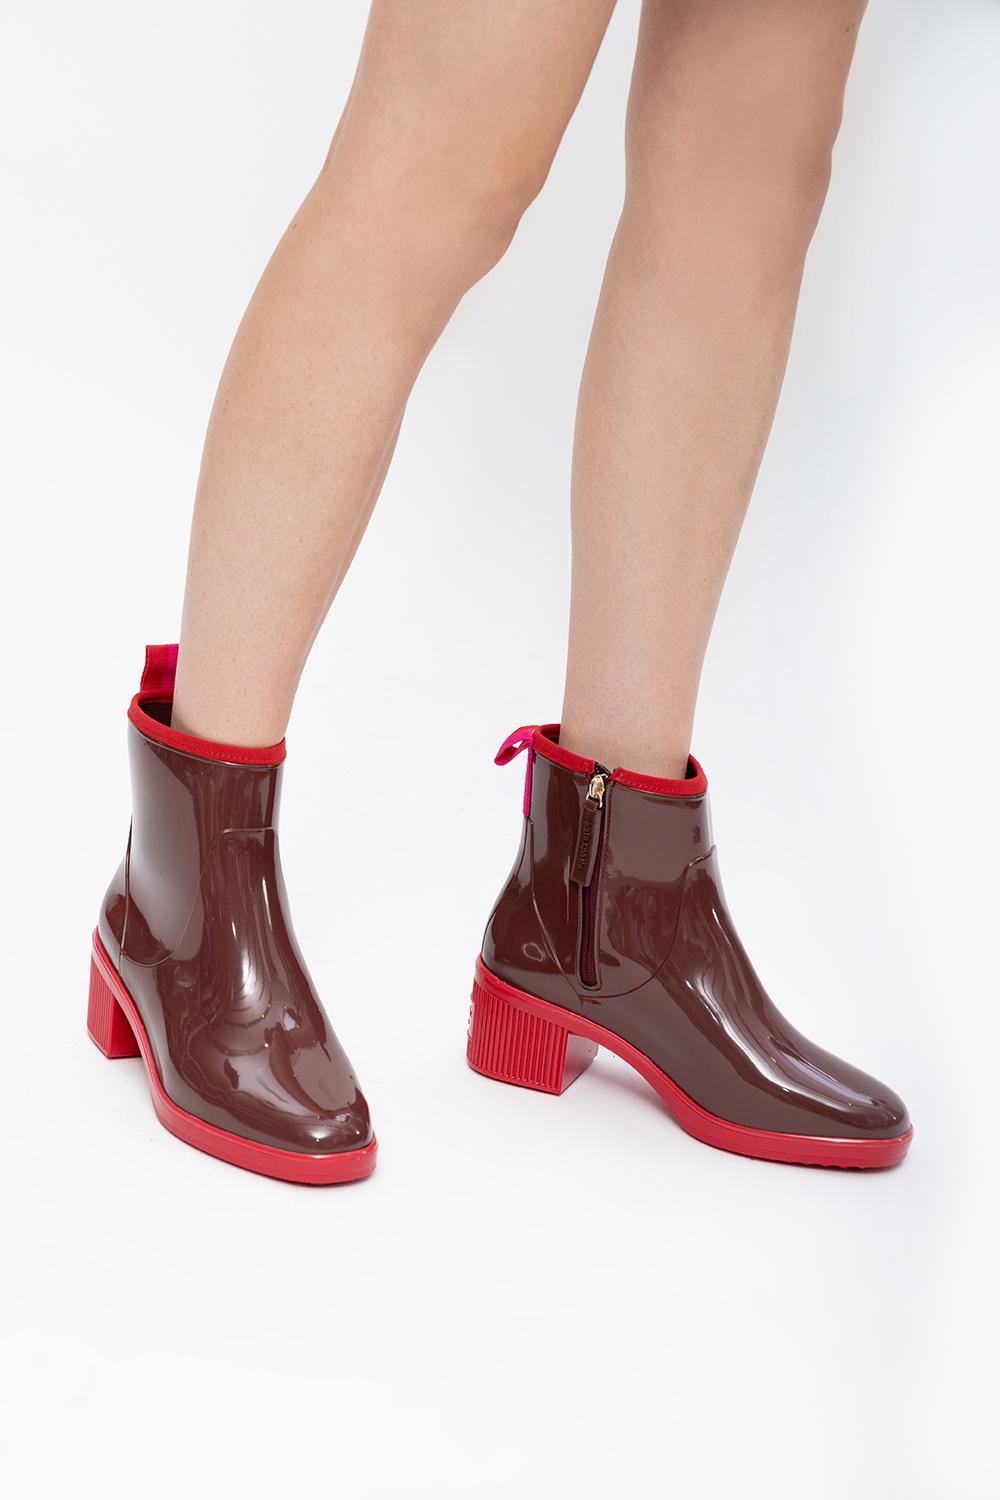 Forstå indbildskhed Bar Kate Spade Heeled Rain Boots in Brown | Lyst